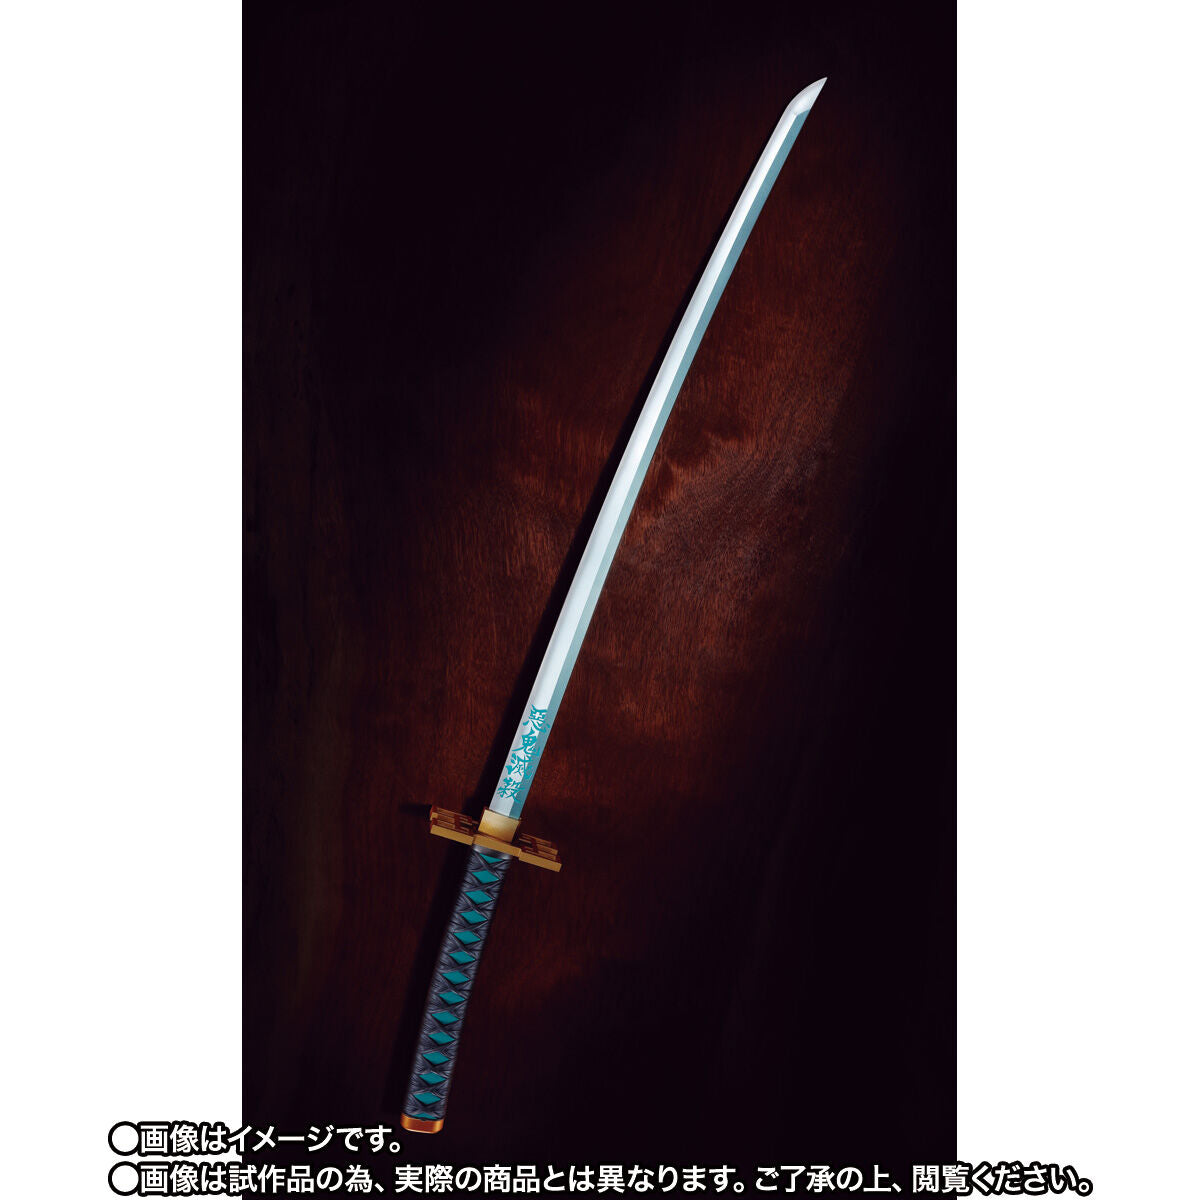 Demon Slayer Proplica Nichirin Sword (Muichiro Tokito)